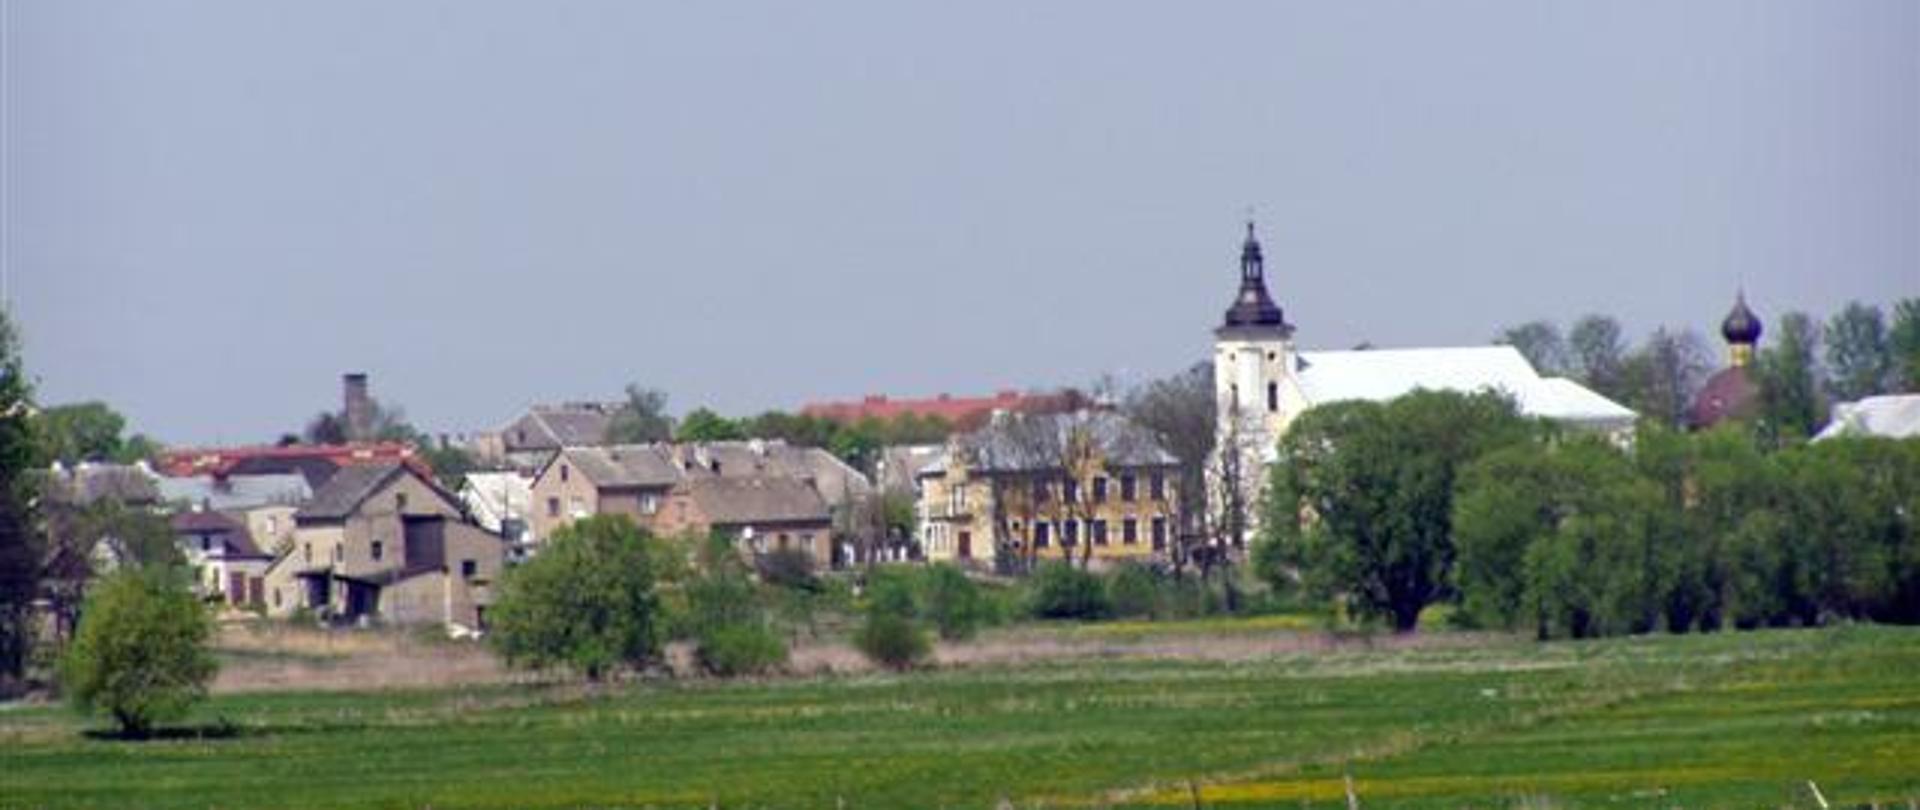 Panorama Brańska od południa (fot. B. Komarzewski)
